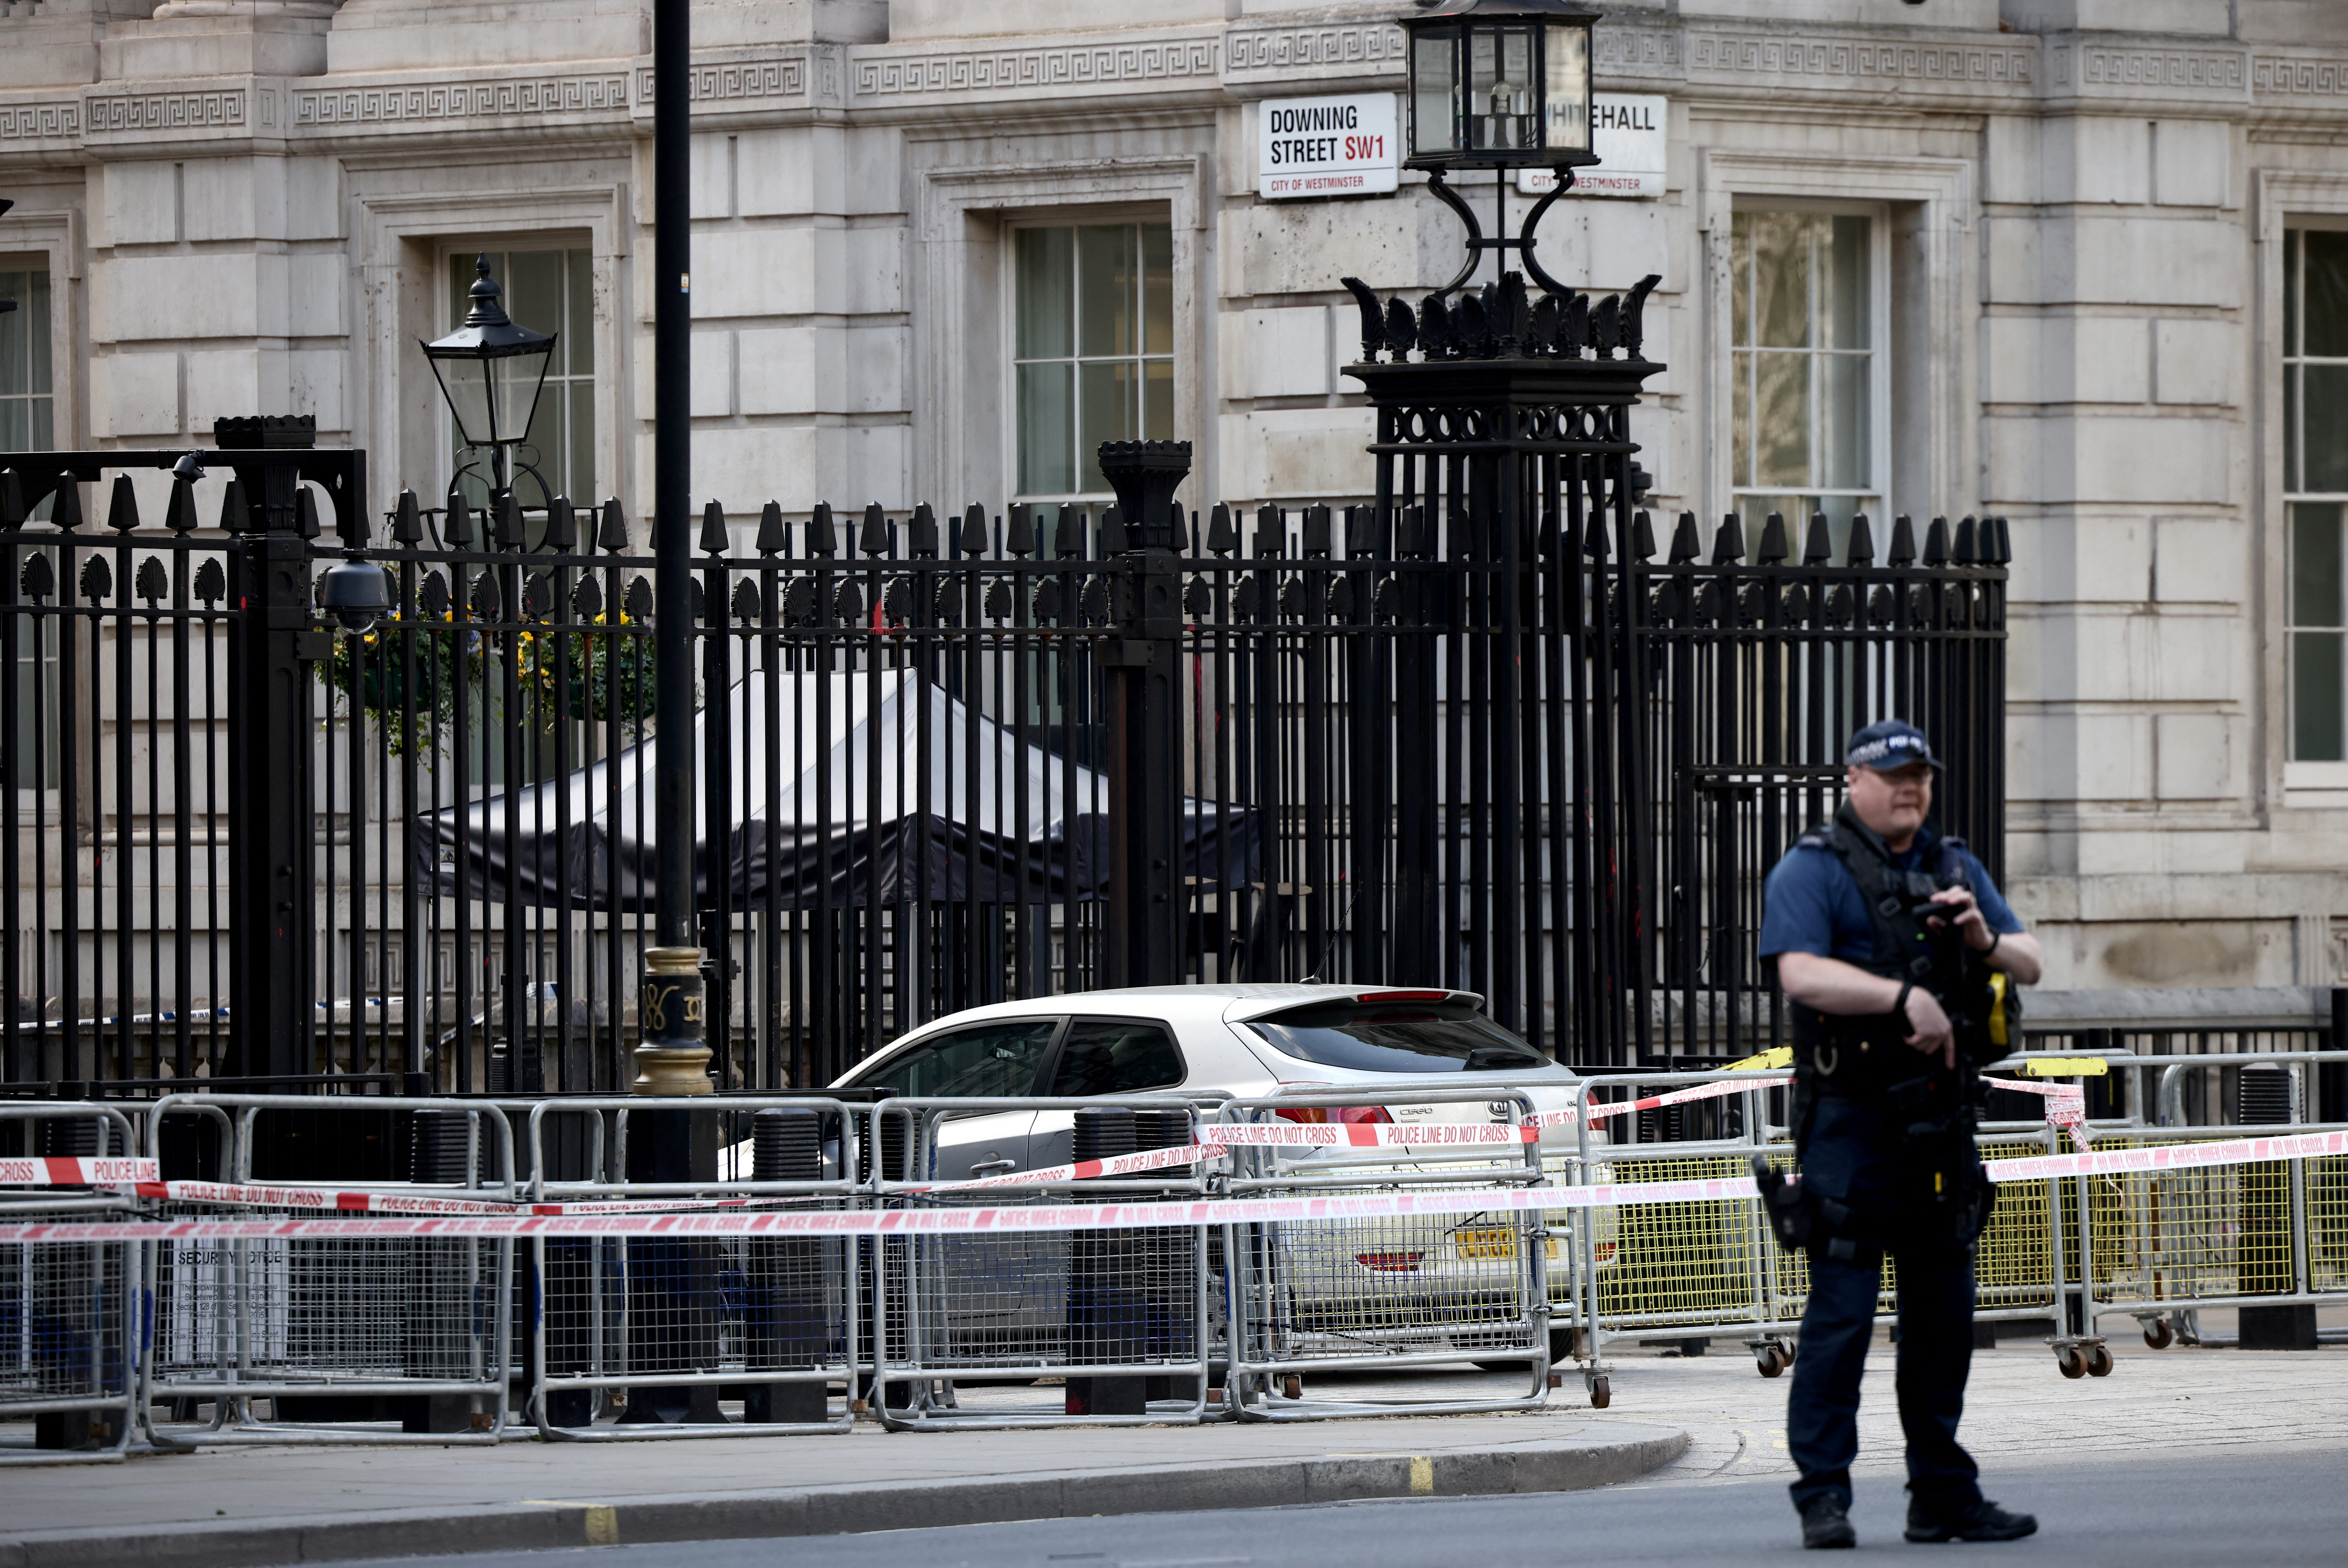 Λονδίνο: «Δεν ήταν τρομοκρατική ενέργεια» το περιστατικό στην πύλη της Downing Street